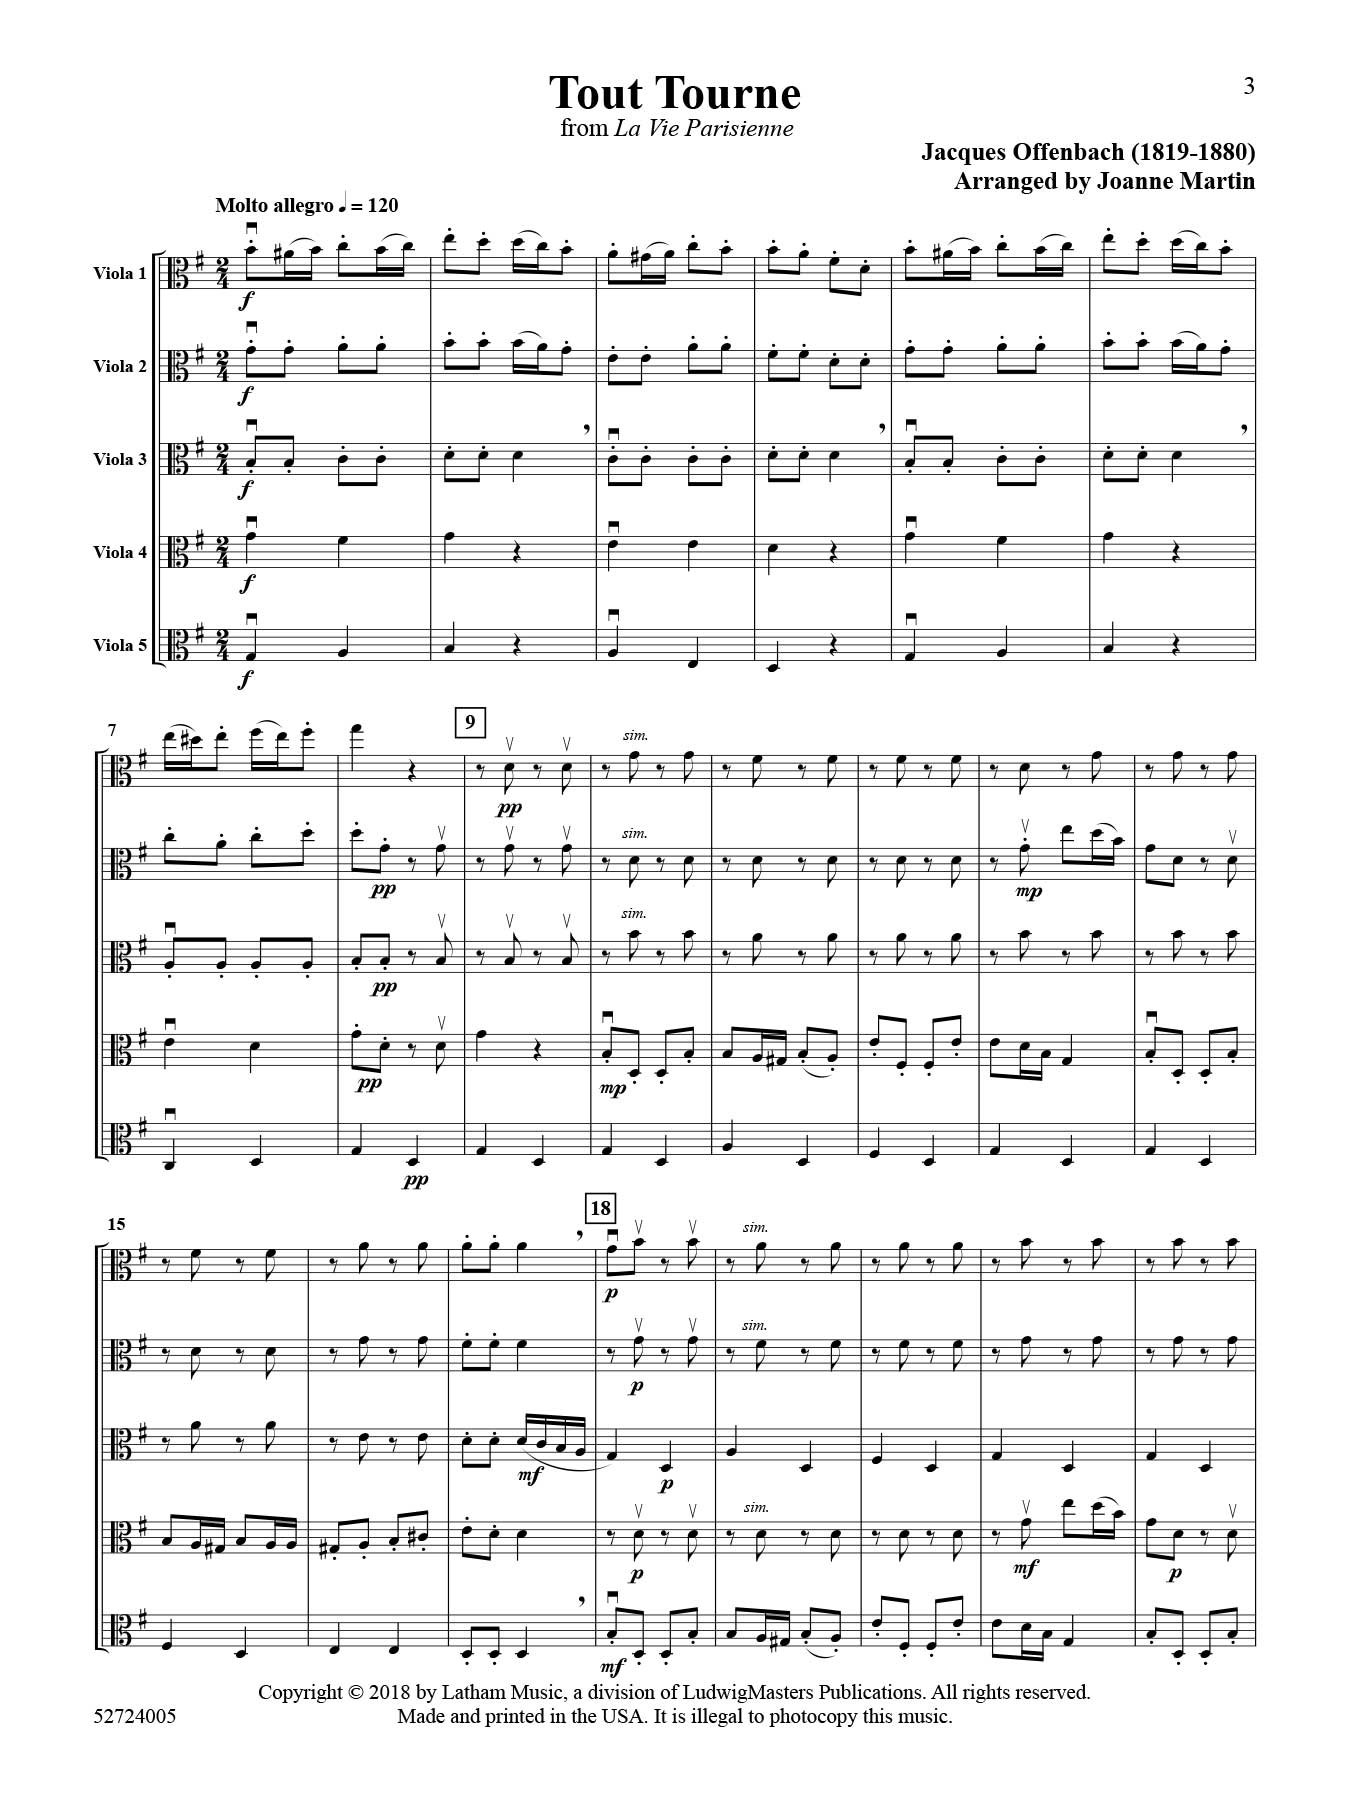 tout-tourne-viola-quintet-score.jpg